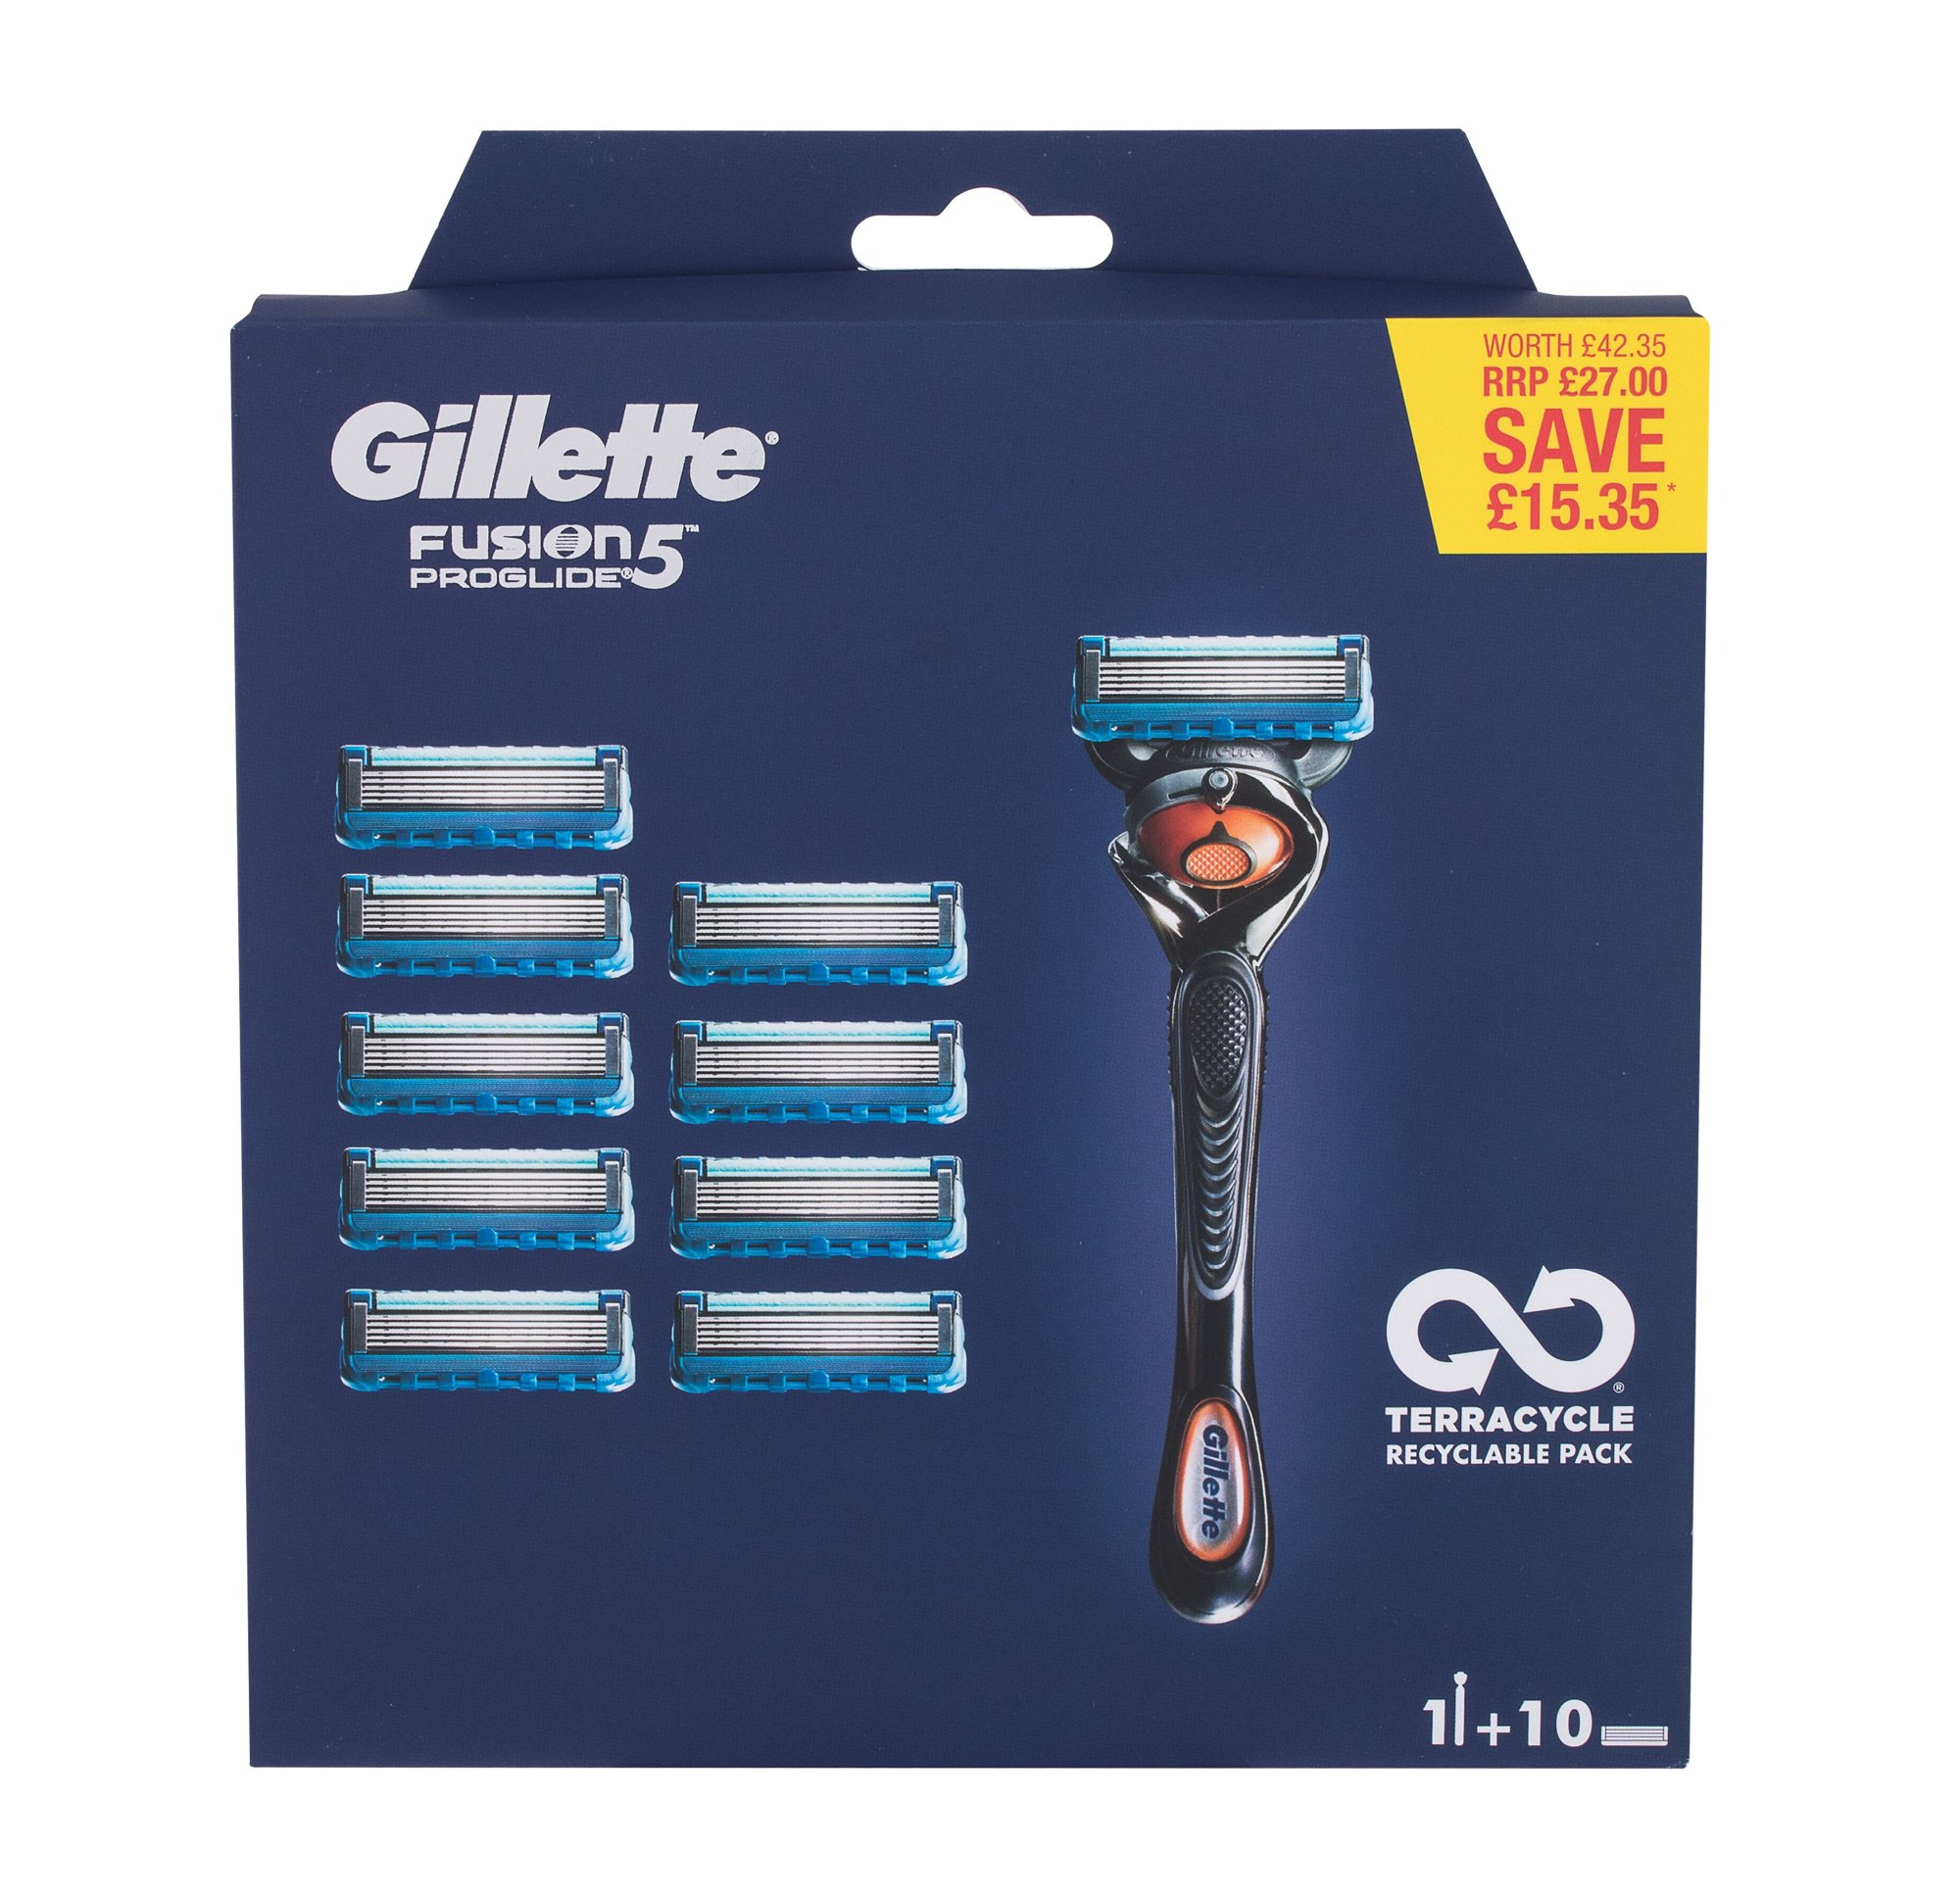 Gillette Fusion Proglide skustuvas